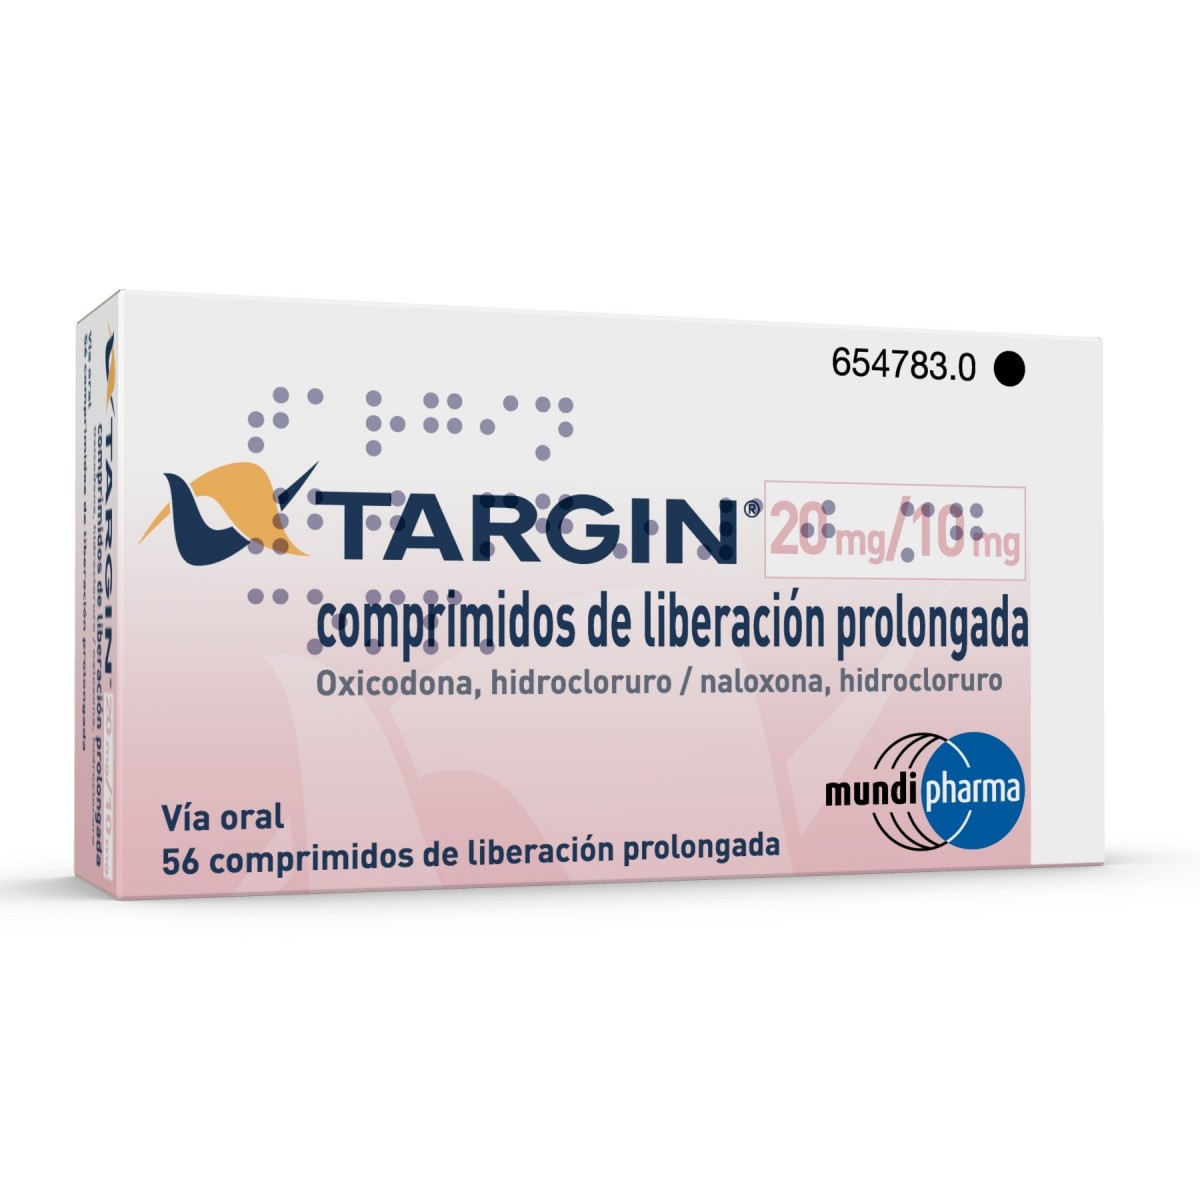 TARGIN 20 mg/10 mg COMPRIMIDOS DE LIBERACION PROLONGADA , 56 comprimidos fotografía del envase.